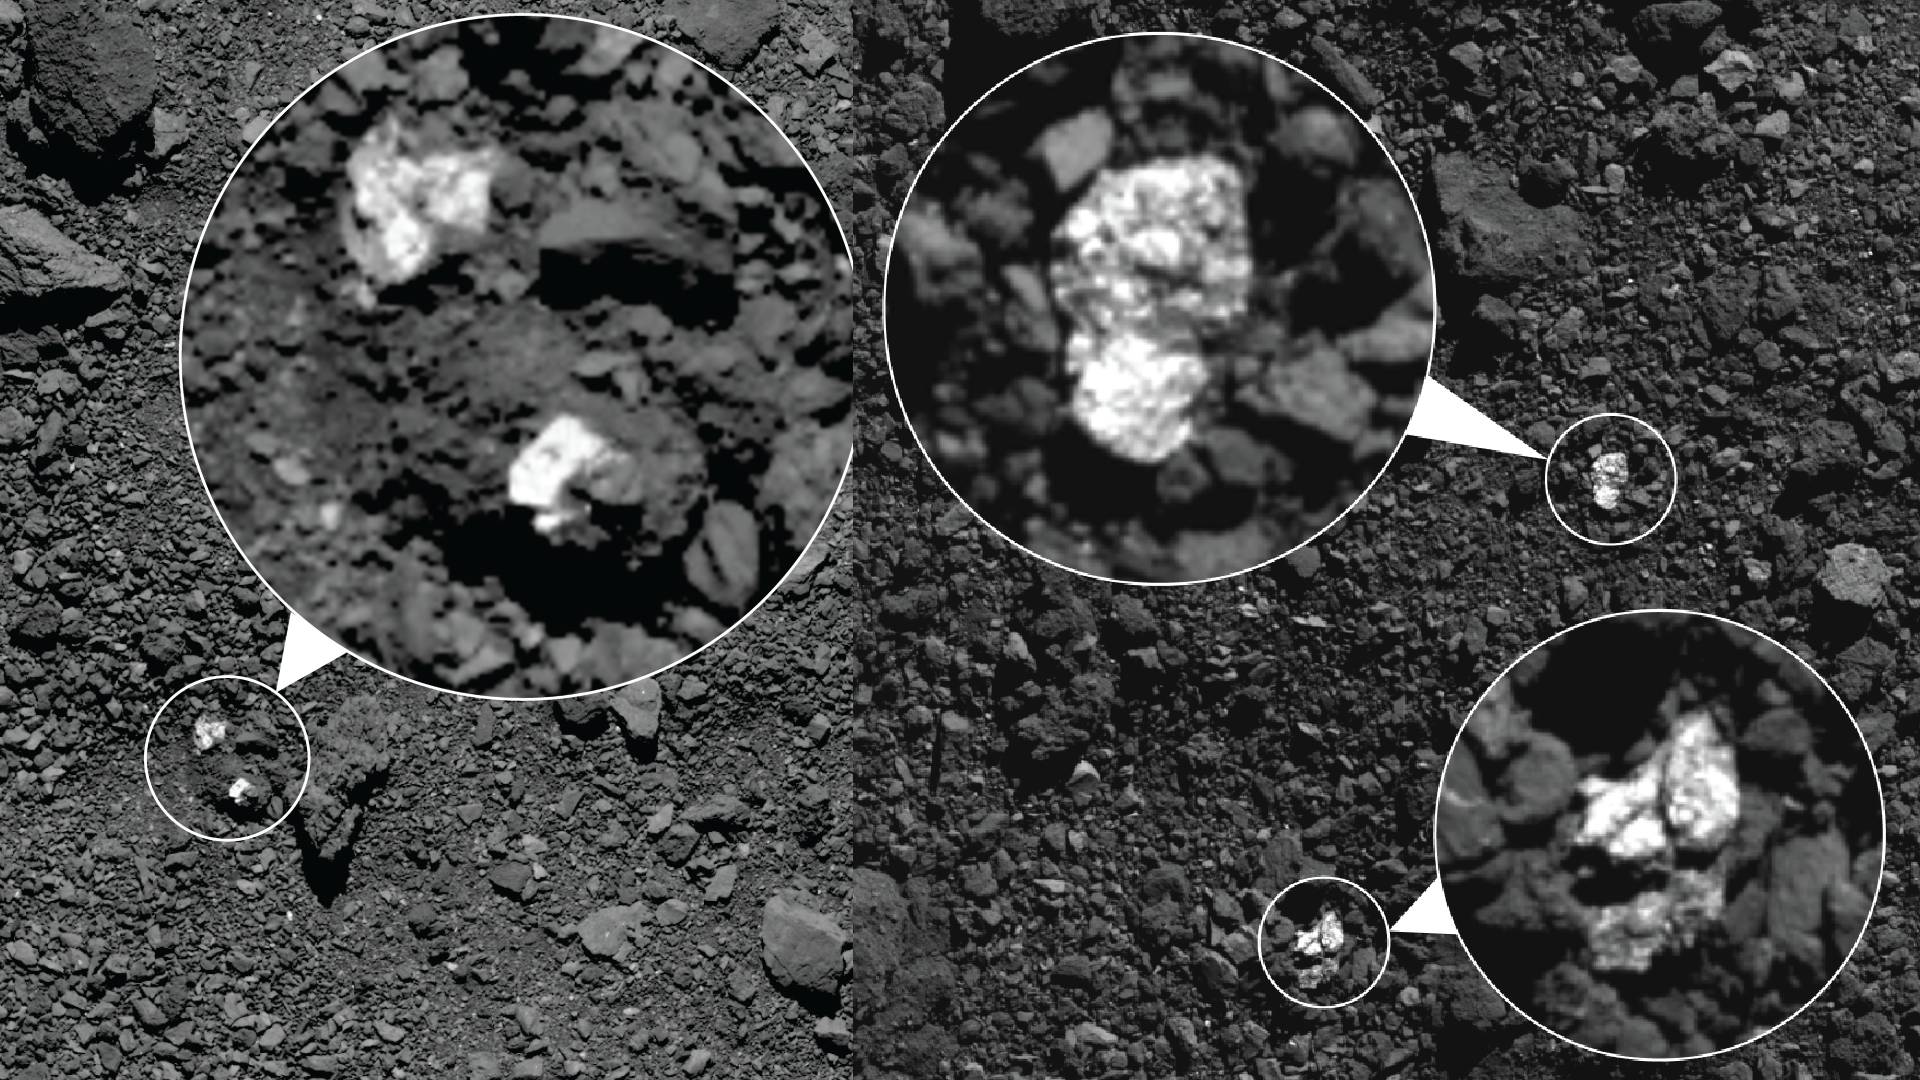 Elementos básicos para la vida en asteroide Bennu; la NASA lo descubrió en muestras del aerolito.